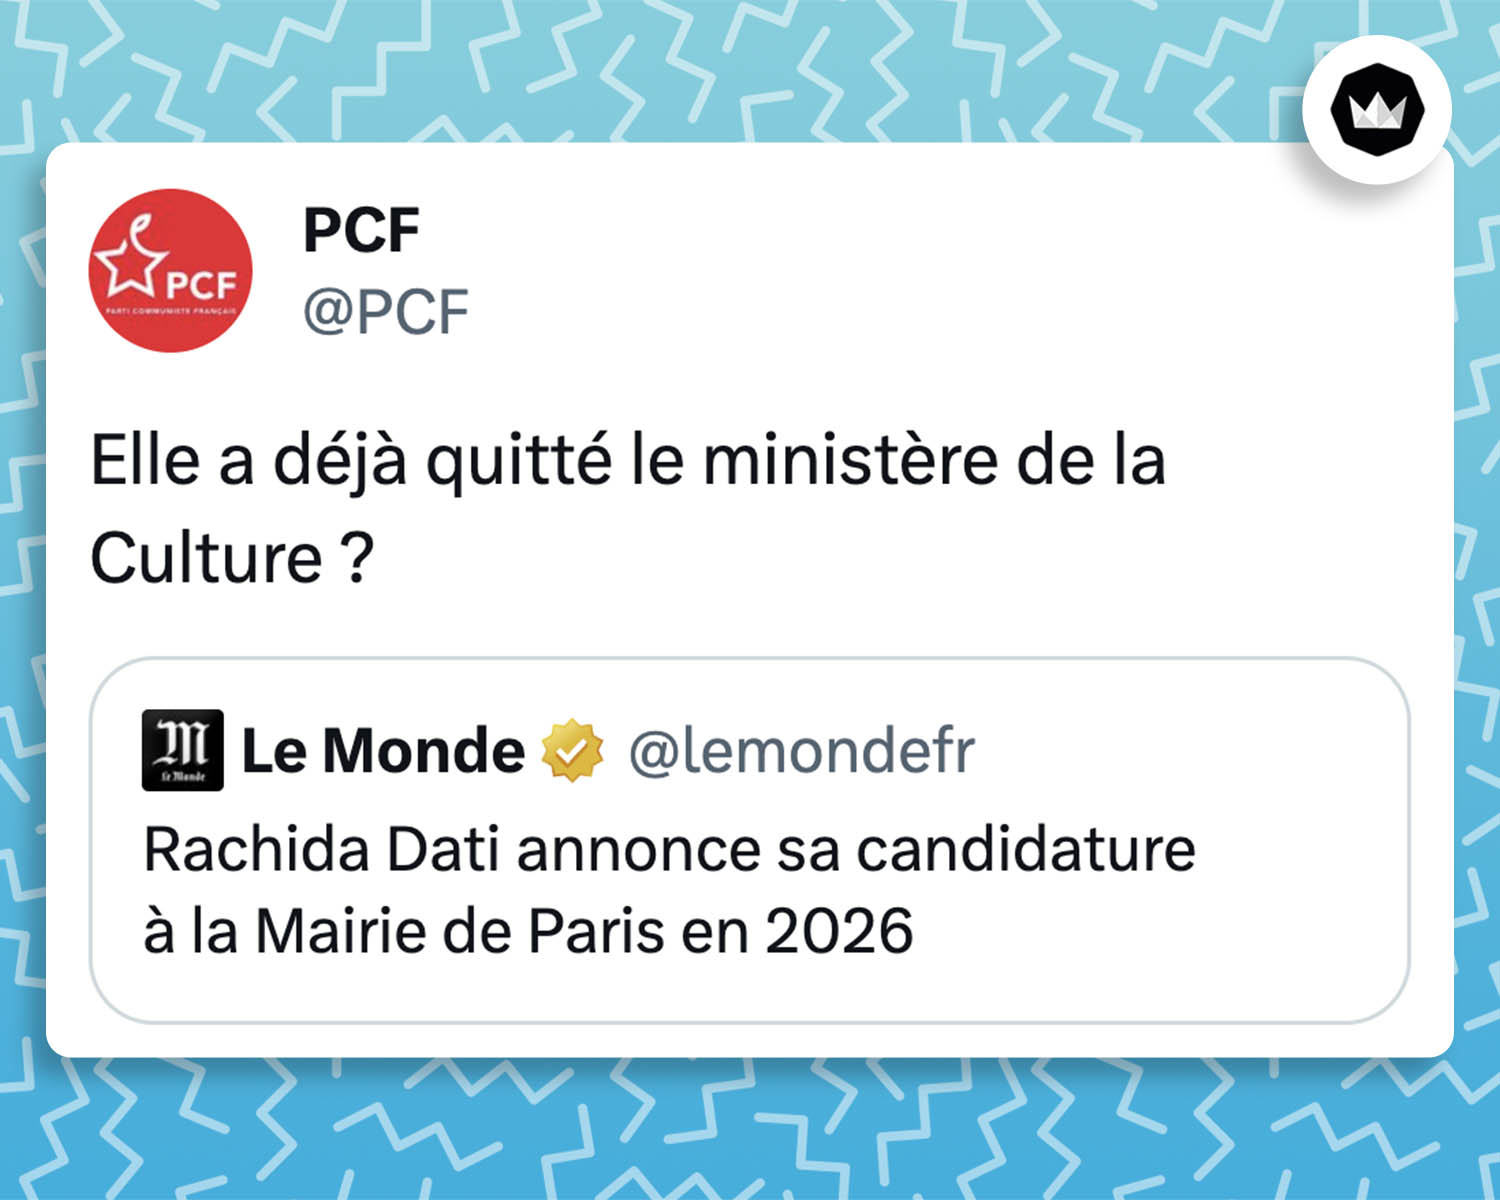 @lemondefr : Rachida Dati annonce sa candidature à la Mairie de Paris en 2026 
@PCF : Elle a déjà quitté le ministère de la Culture ?